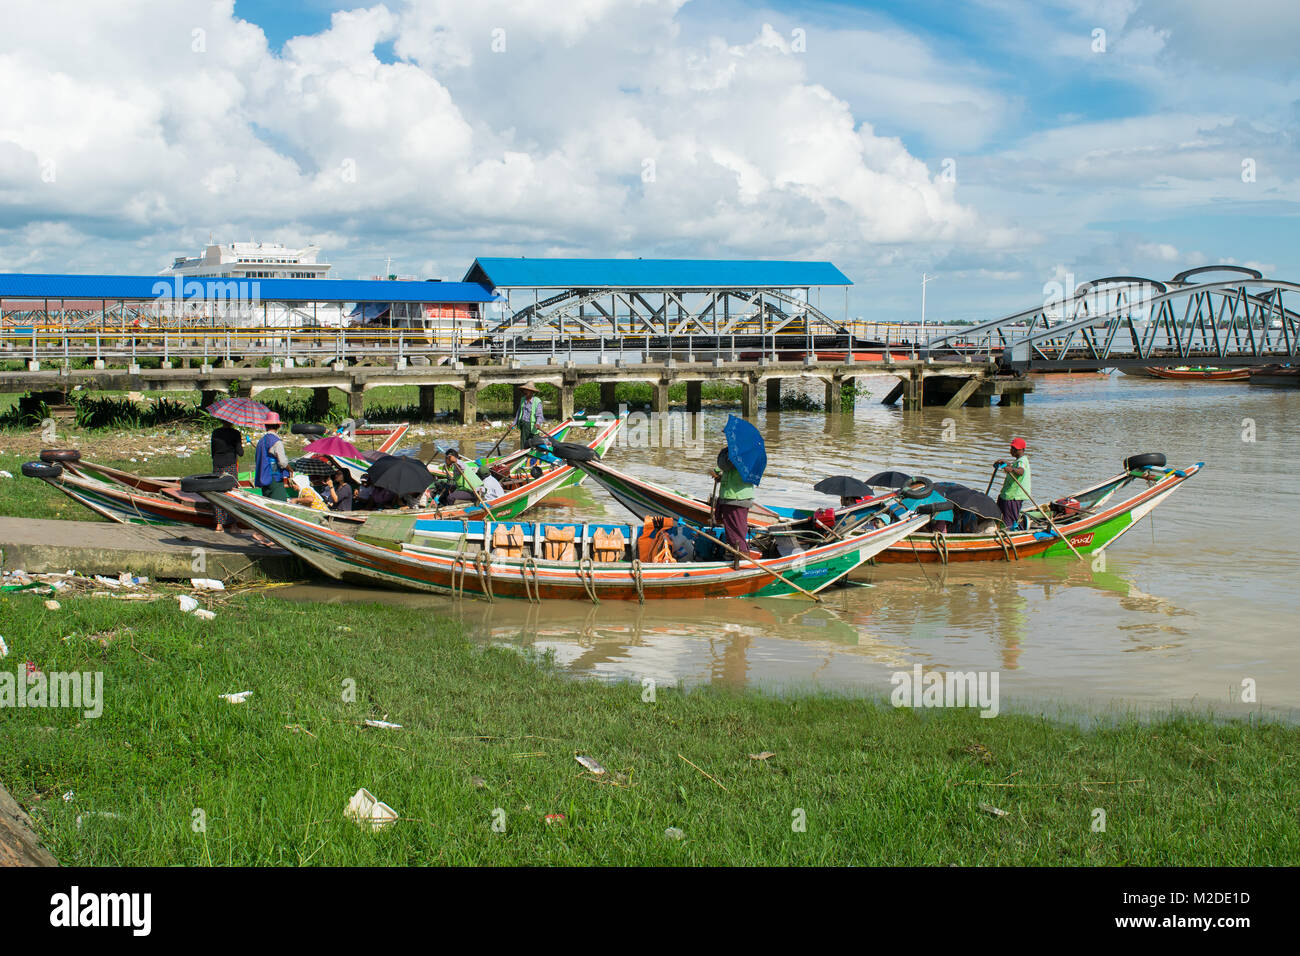 Una barca che arrivano al molo Botahtaung, che trasportano passeggeri birmano sul fiume Yangon. brown acqua di fiume, barche colorate, acqua pulita trasporti, Birmania Foto Stock